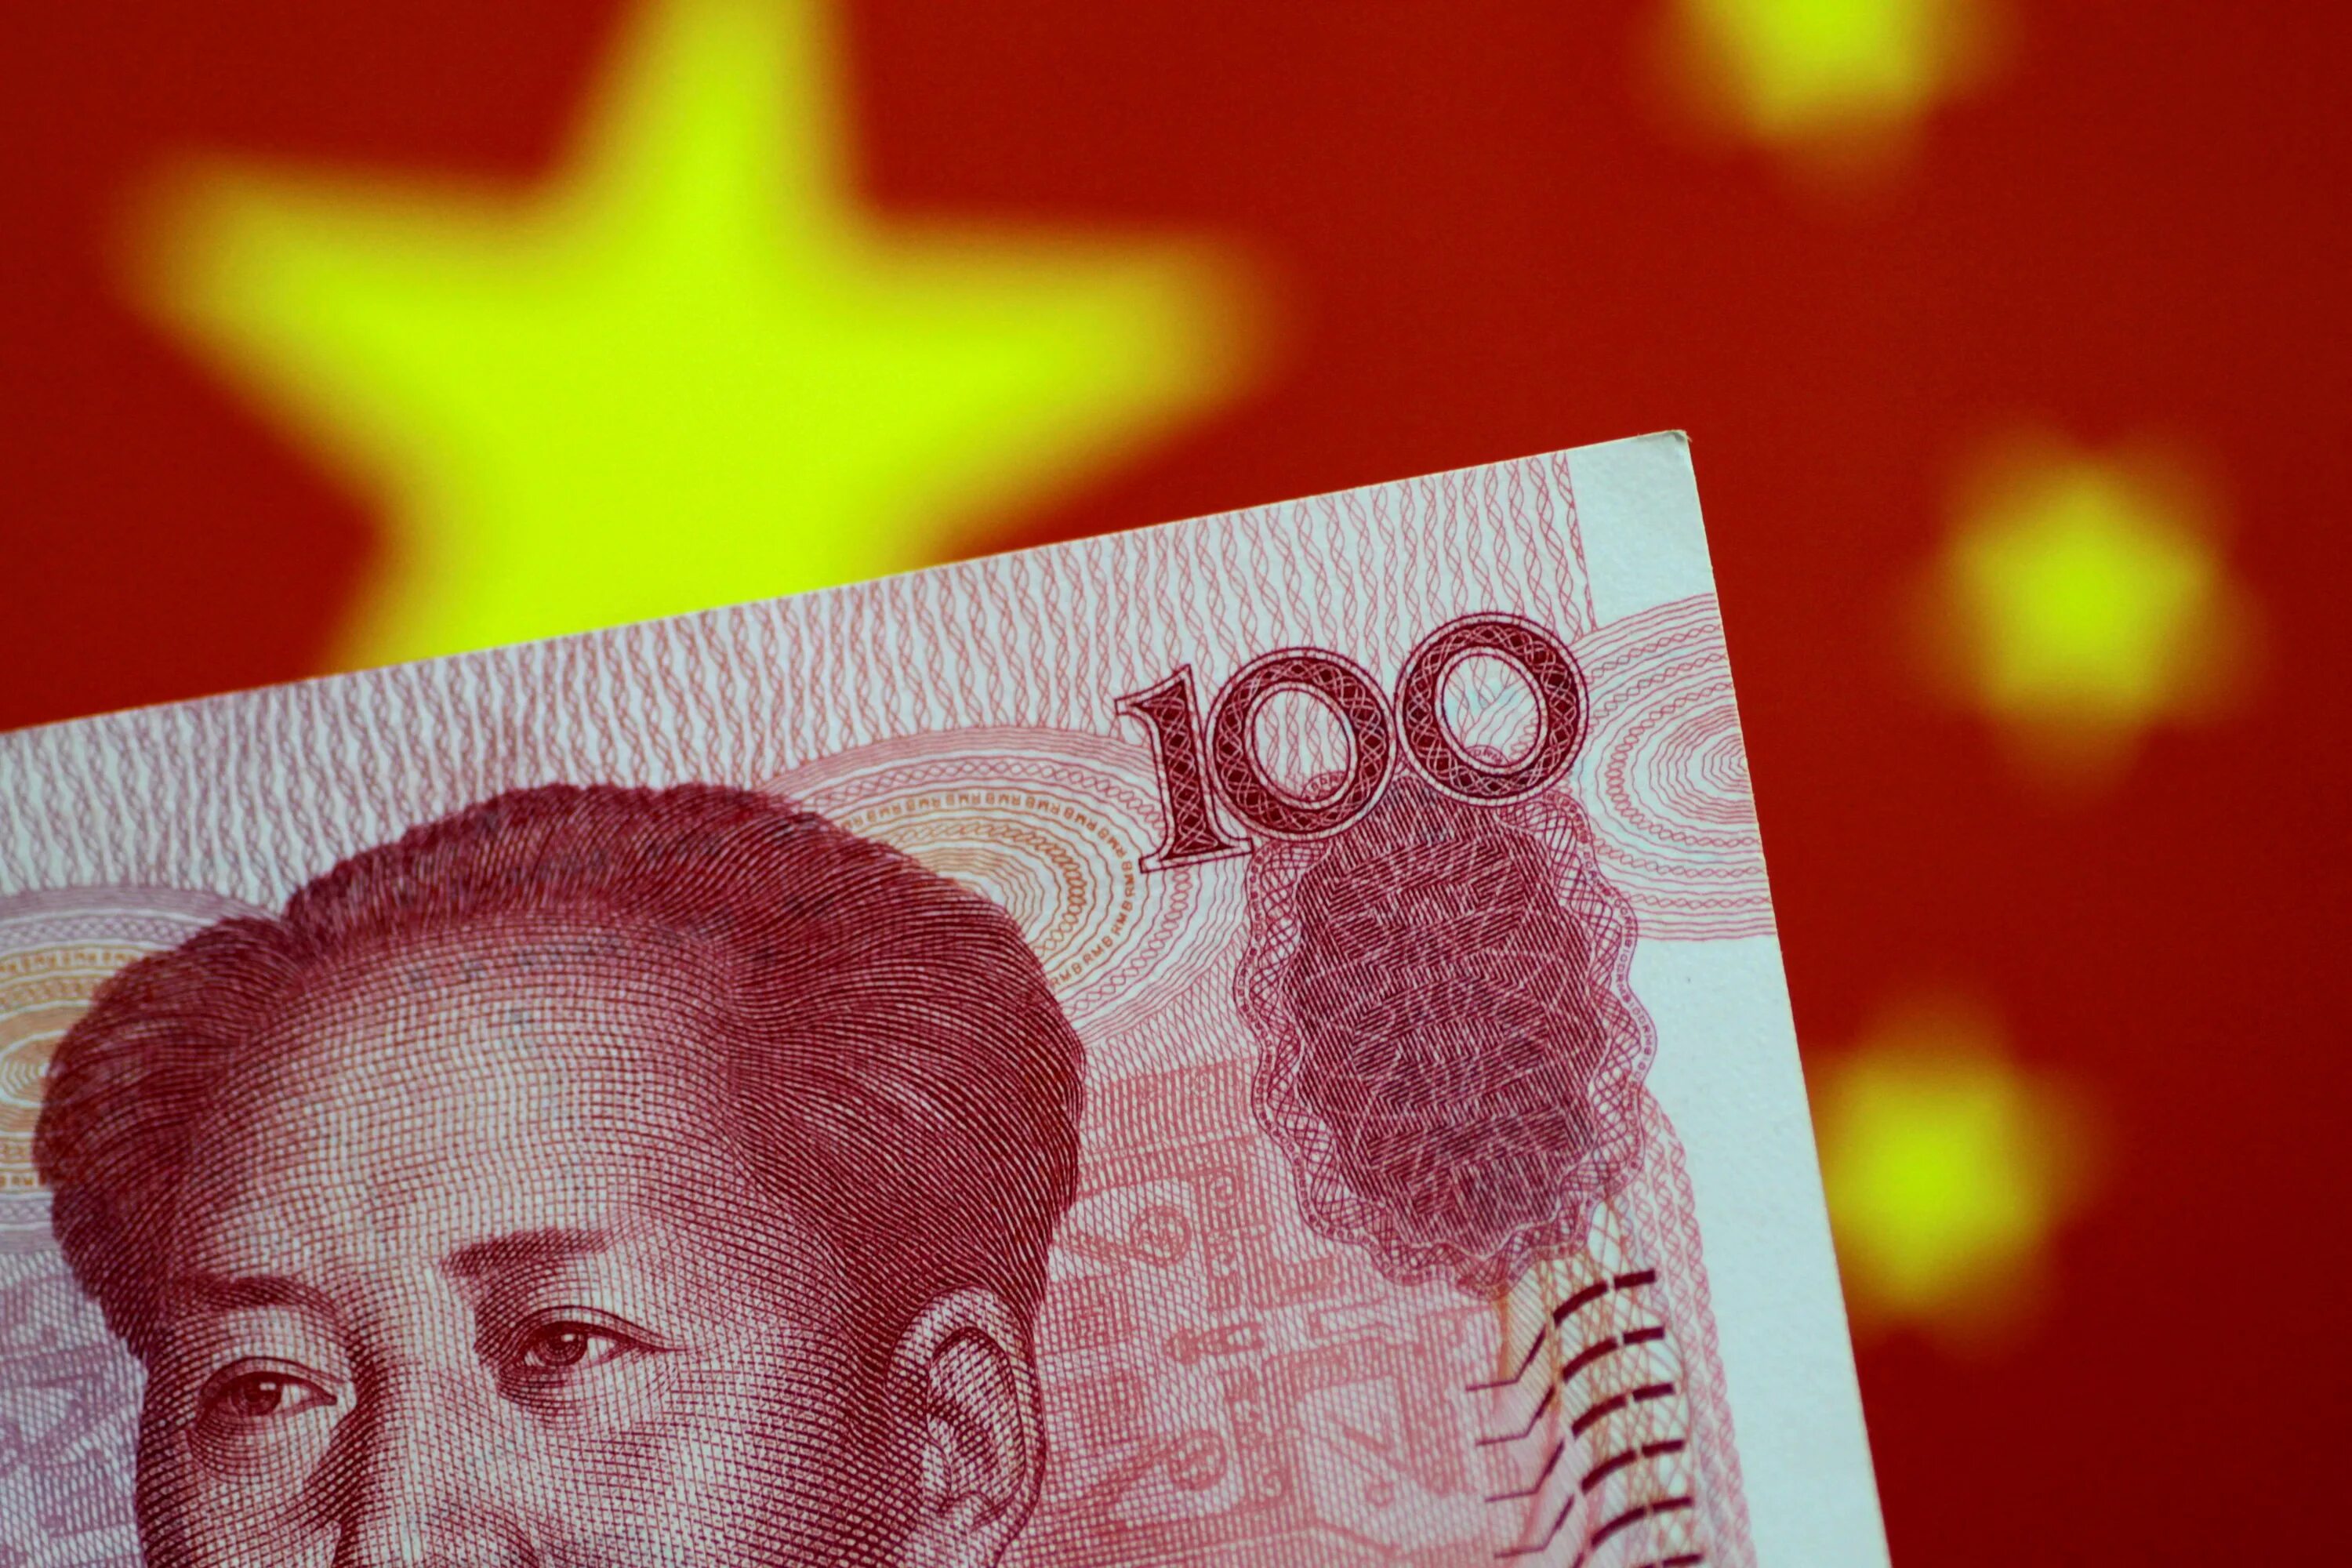 Обменять китайские юани. Китайский юань. Китайская валюта. Валюта Китая. Китайская валюта юань.